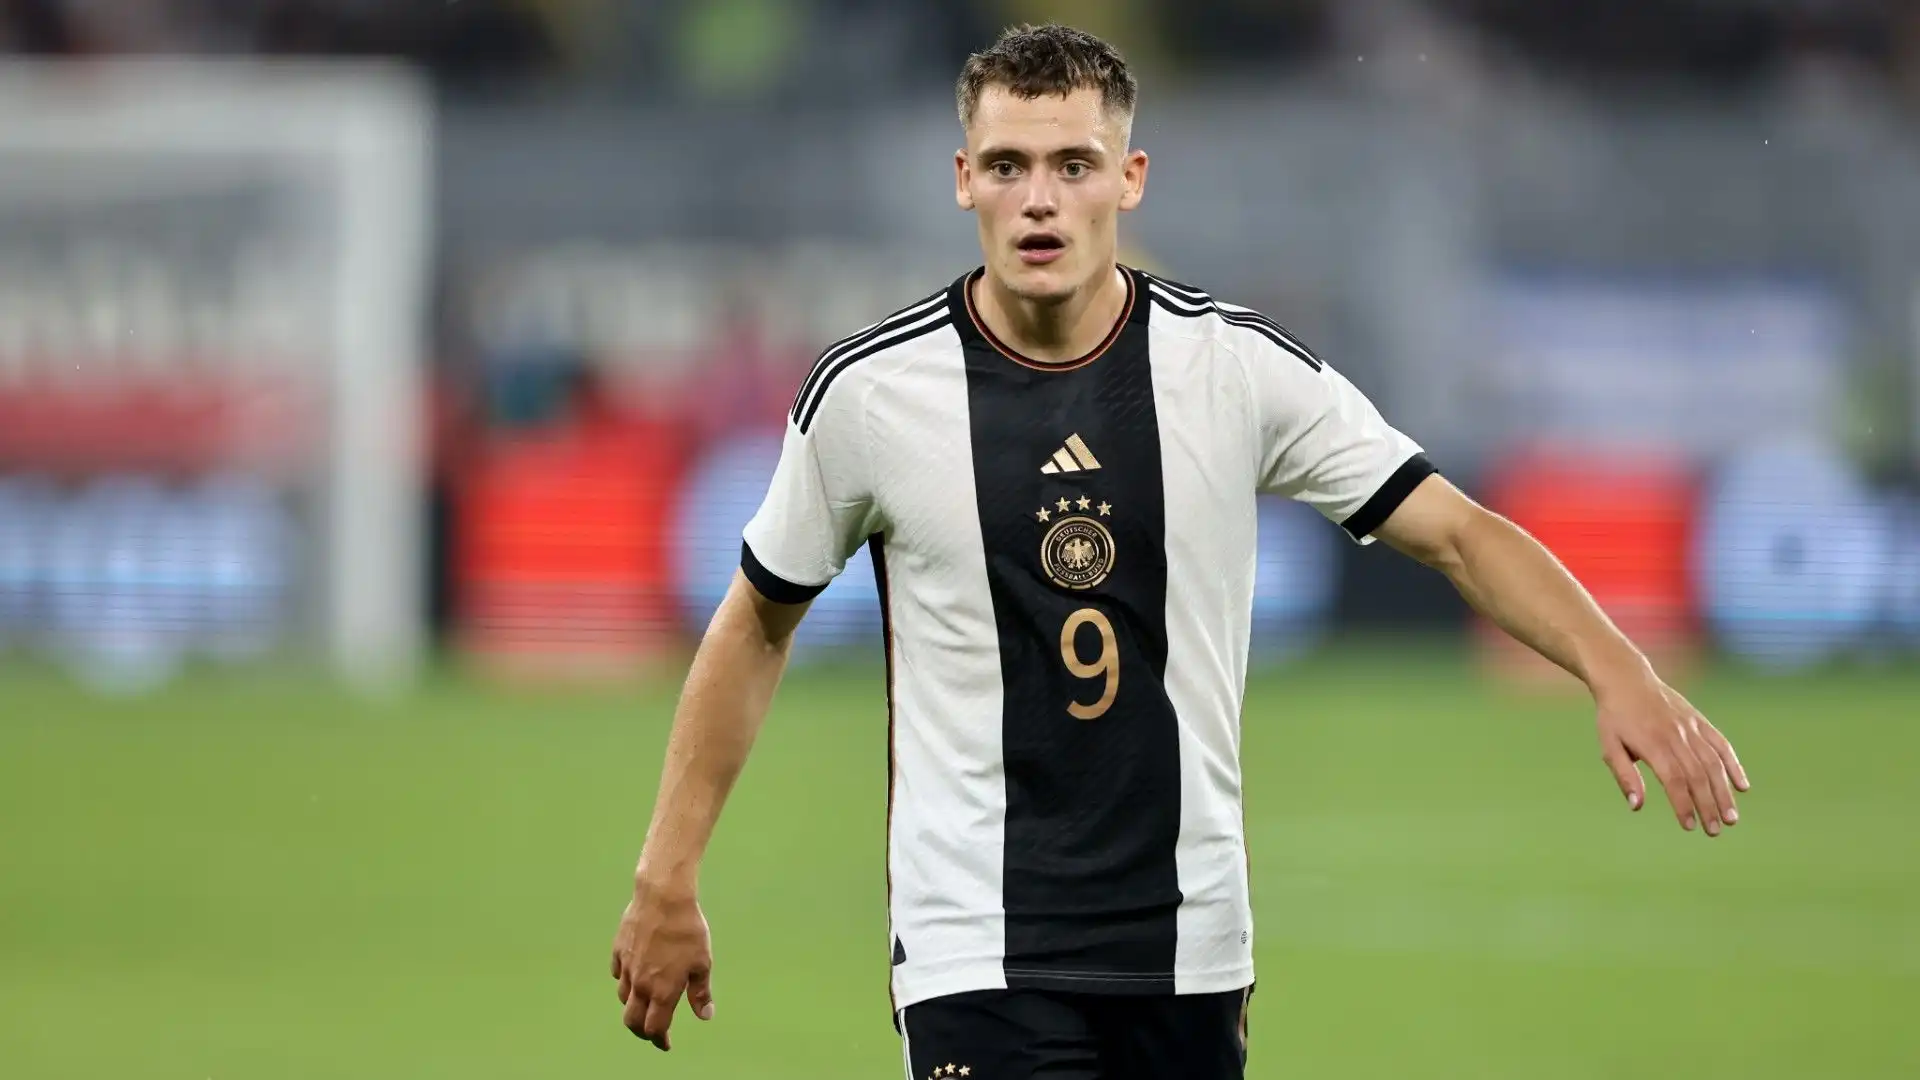 Il club tedesco sarà disposto a trattare la cessione del calciatore solo a fronte di un'offerta molto importante